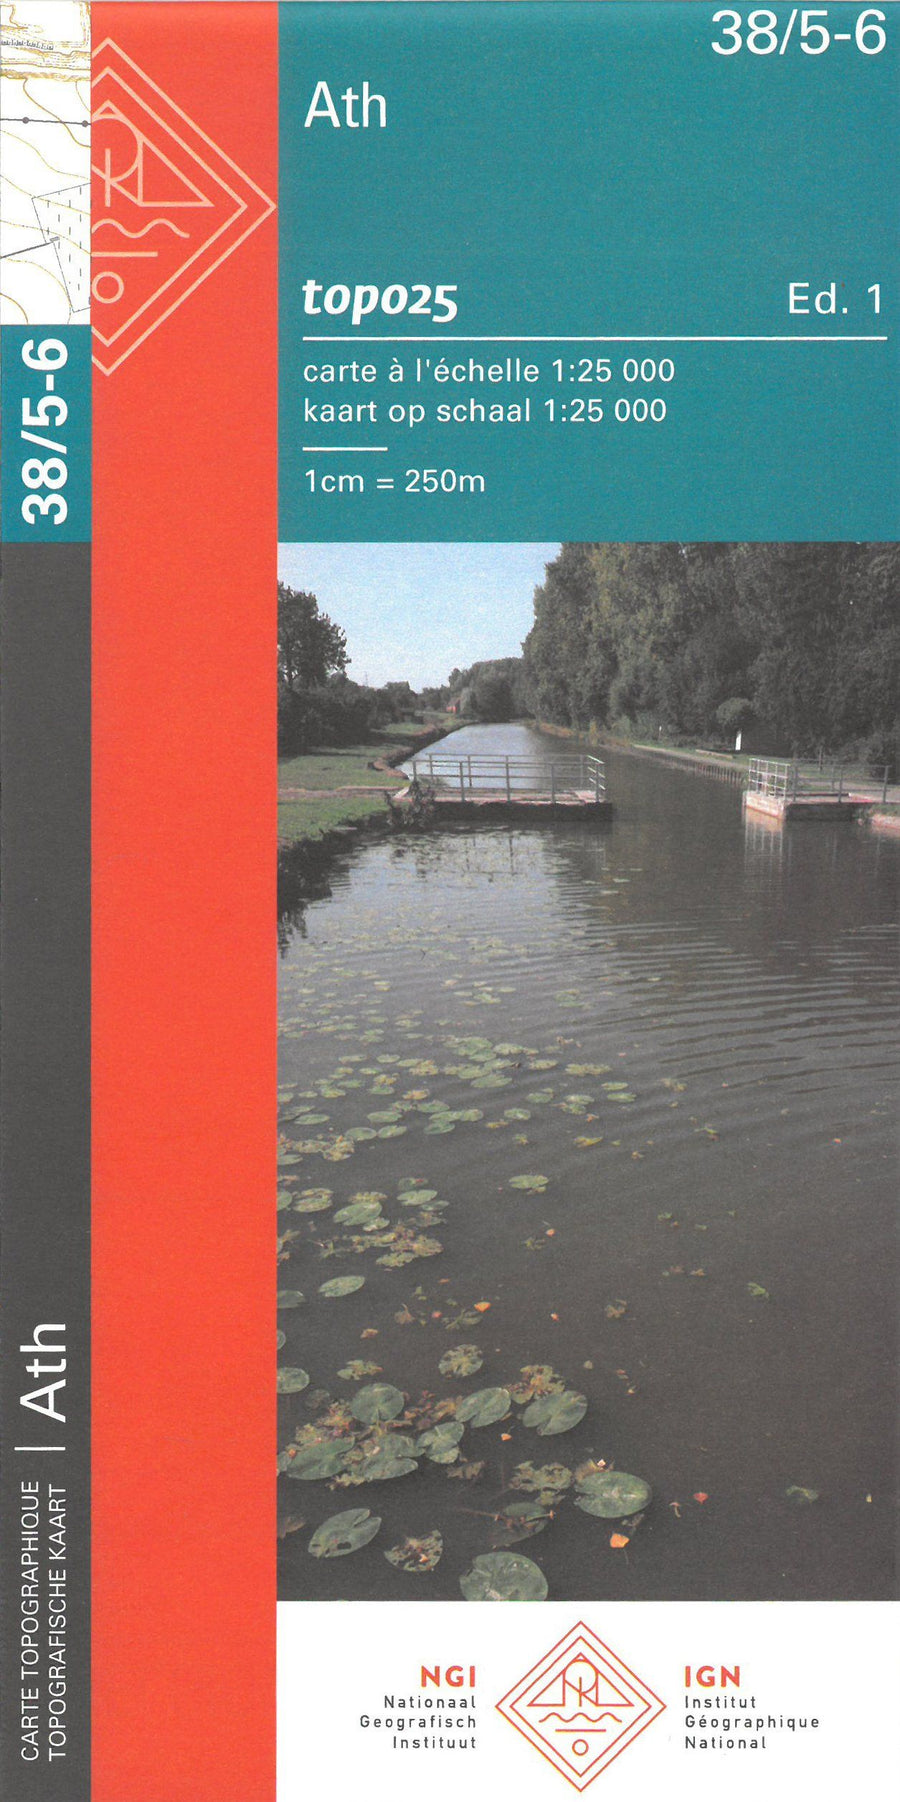 Carte topographique n° 38/5-6 - Ath (Belgique) | NGI topo 25 carte pliée IGN Belgique 